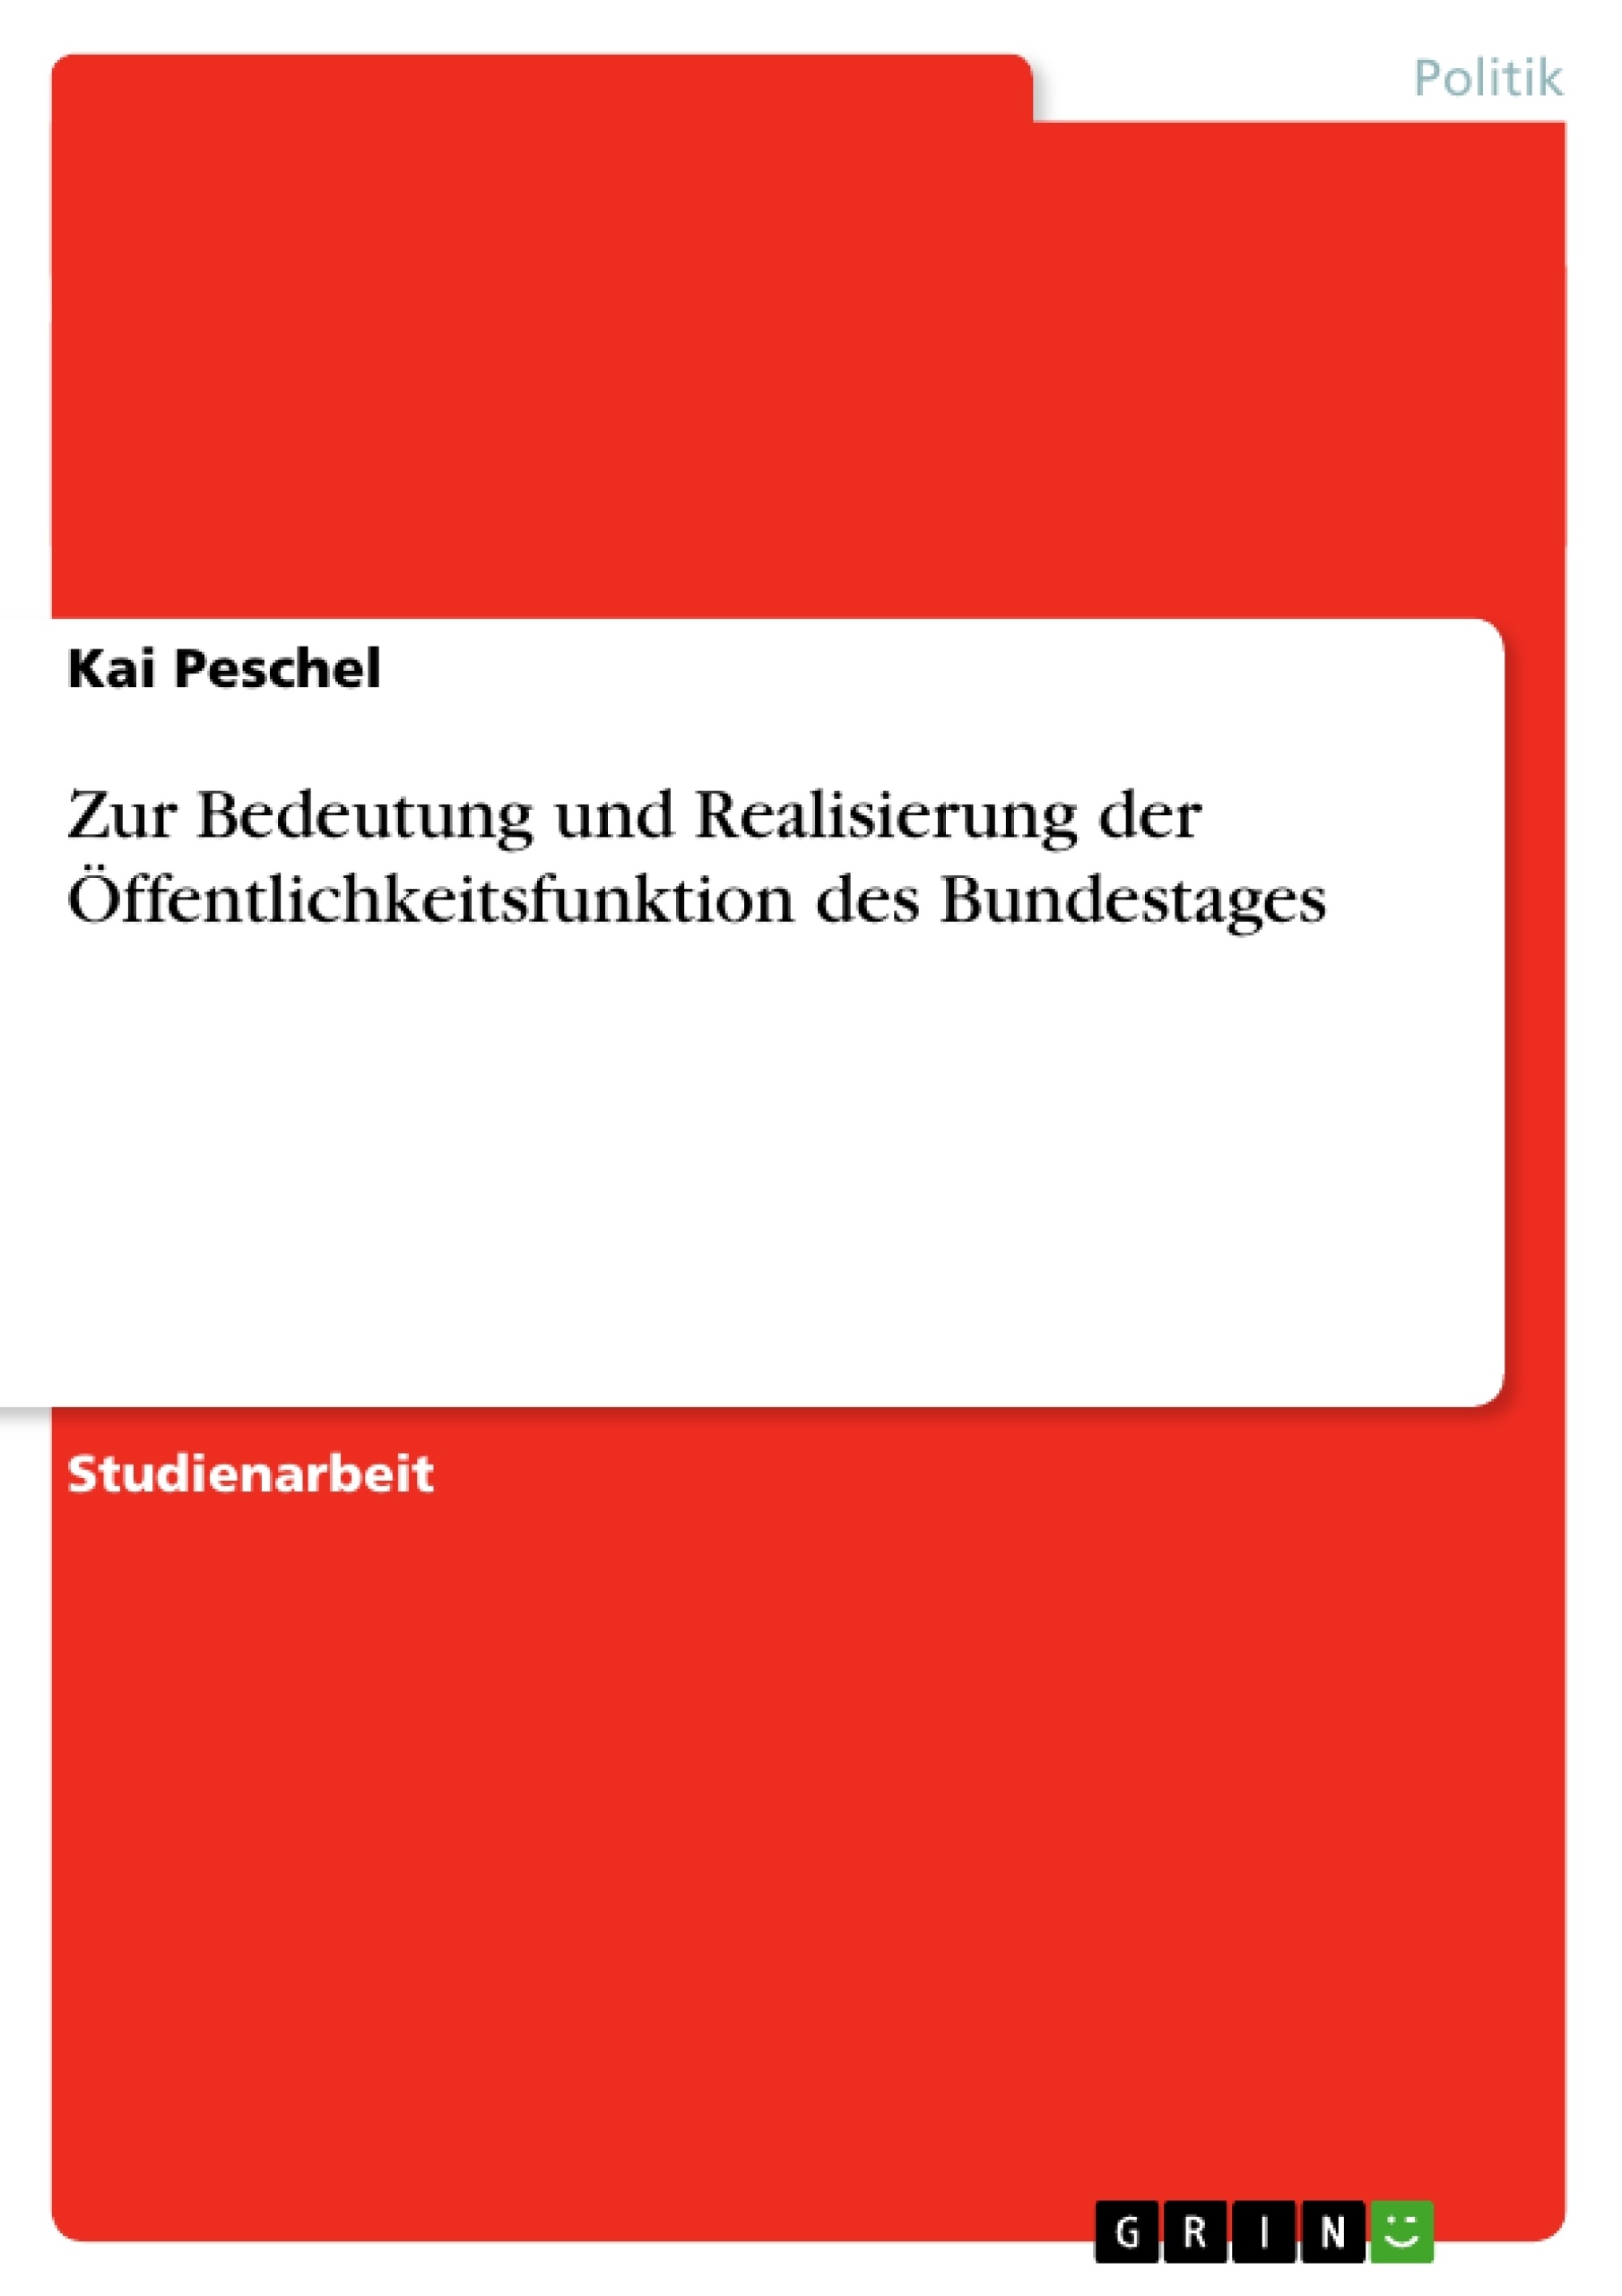 Titre: Zur Bedeutung und Realisierung der Öffentlichkeitsfunktion des Bundestages